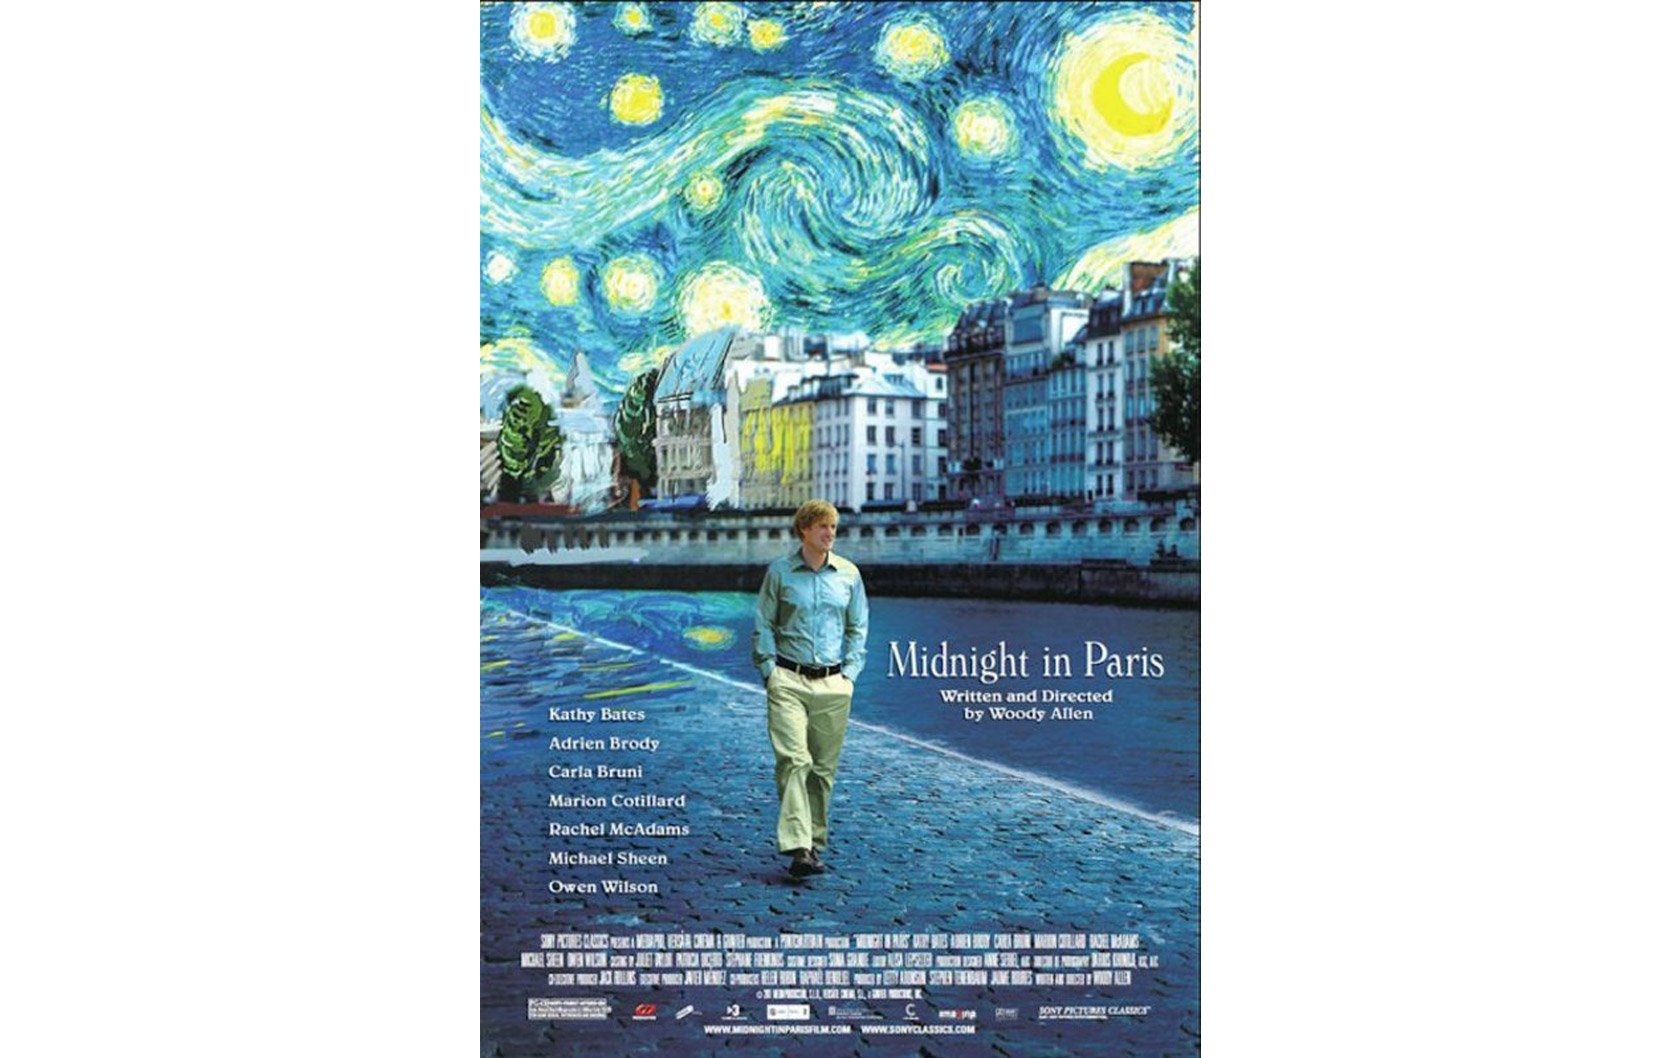 midnight-in-paris-movie-poster